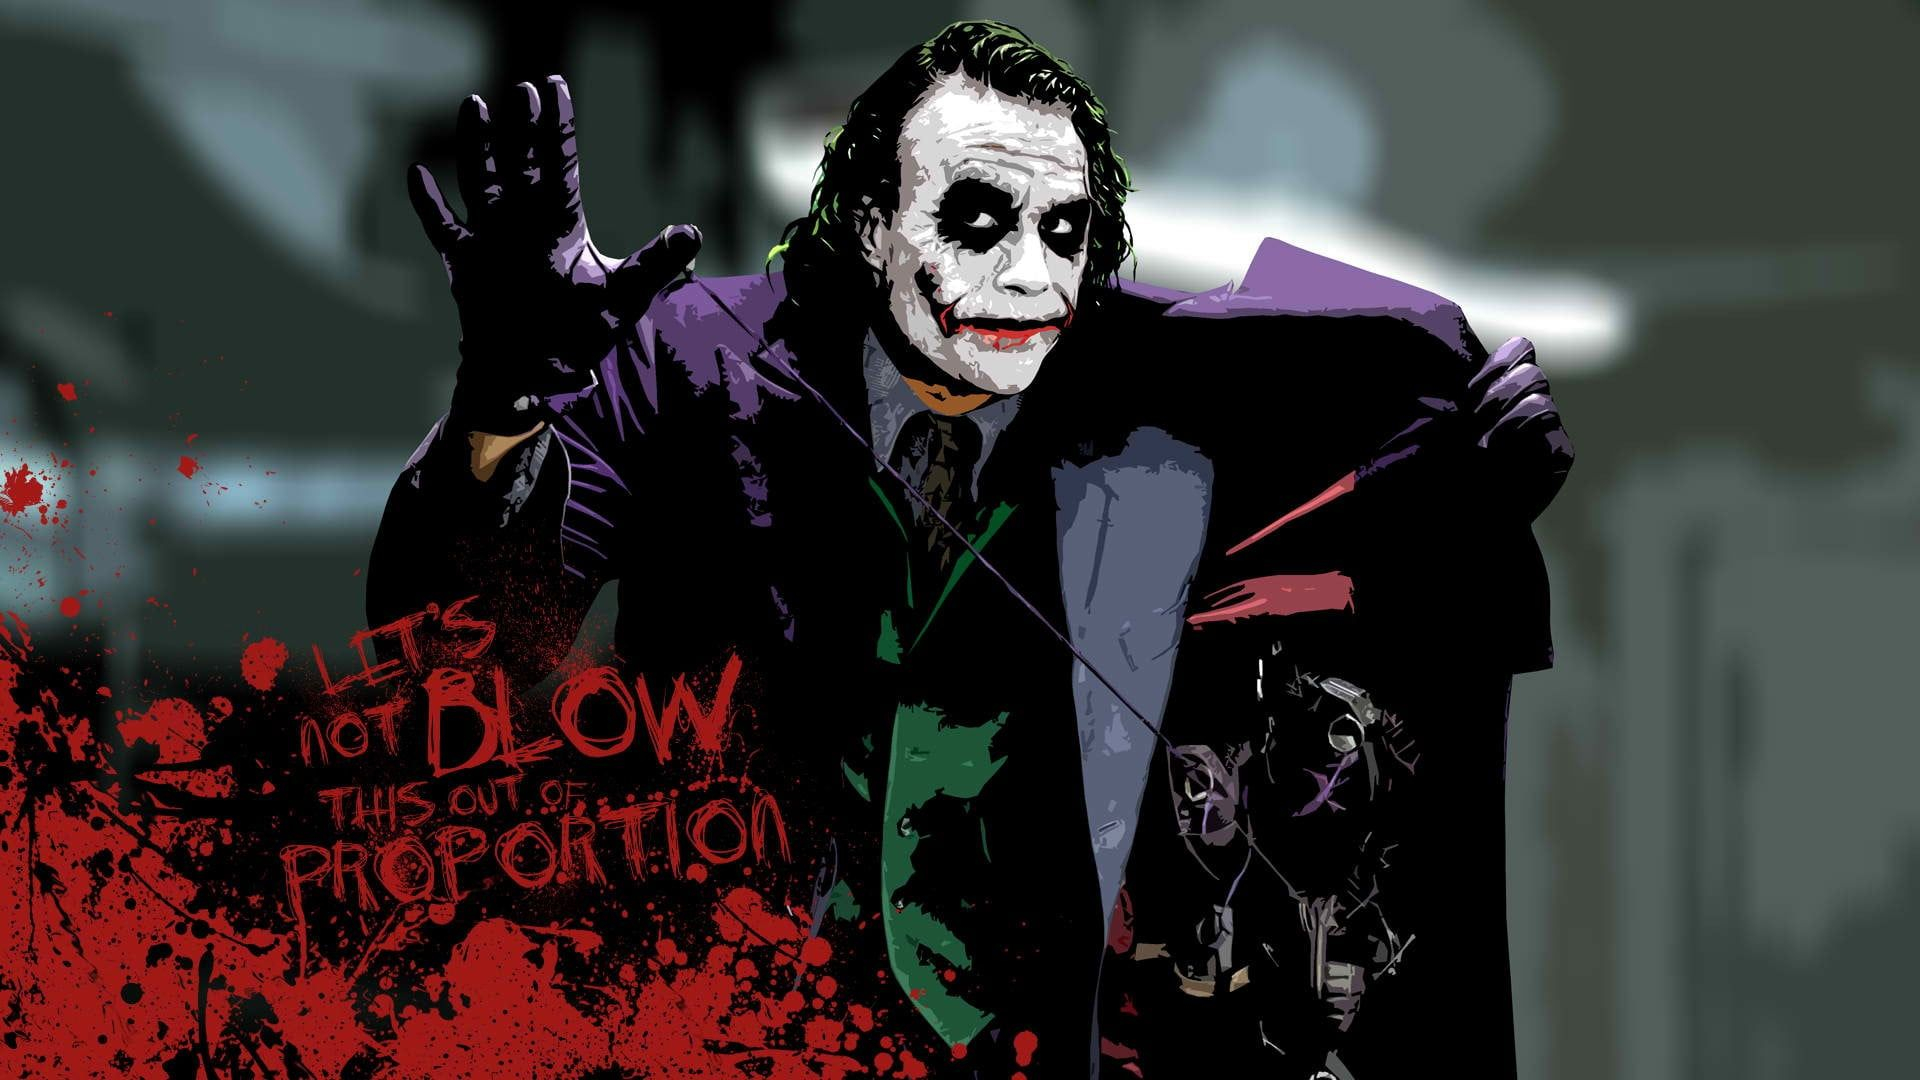 1920x1080 The Joker digital wallpaper #Batman The Dark Knight Heath Ledger #movies # Joker #typography paint sp&acirc;&#128;&brvbar; | Joker wallpapers, Joker images, Heath ledger joker wallpaper